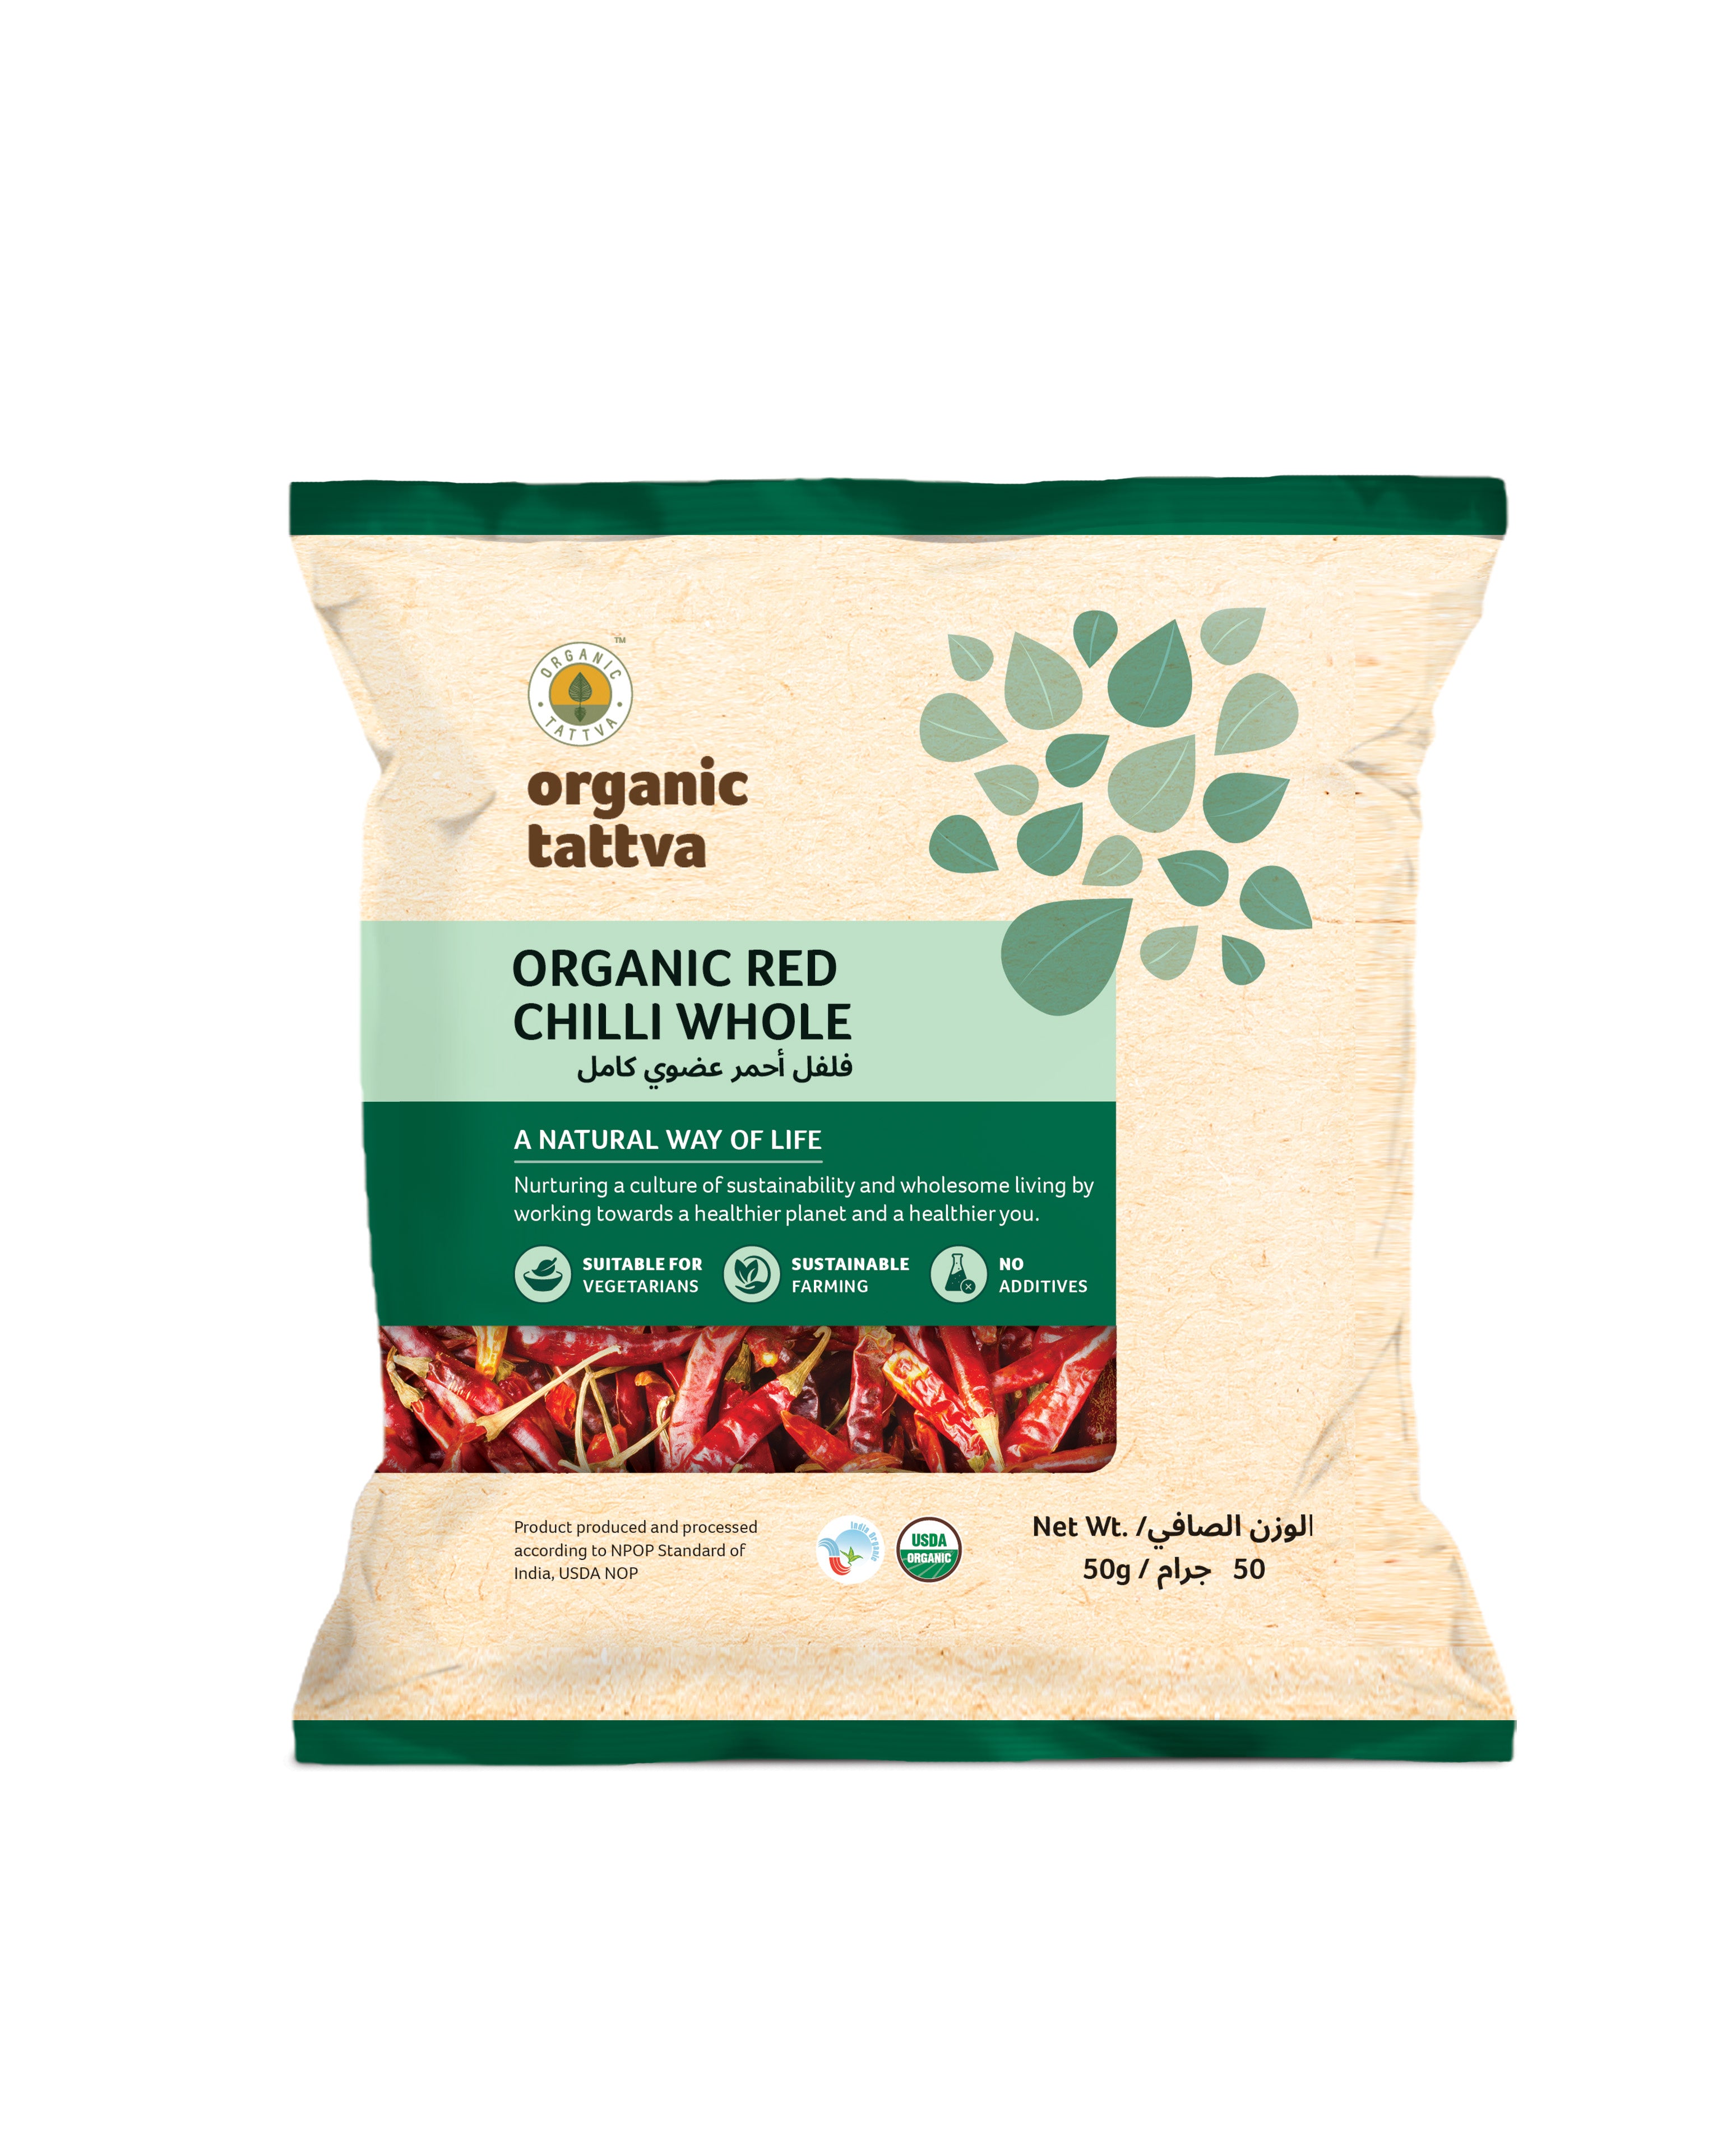 ORGANIC TATTAVA Organic Red Chilli Whole, 50g - Organic, Vegan